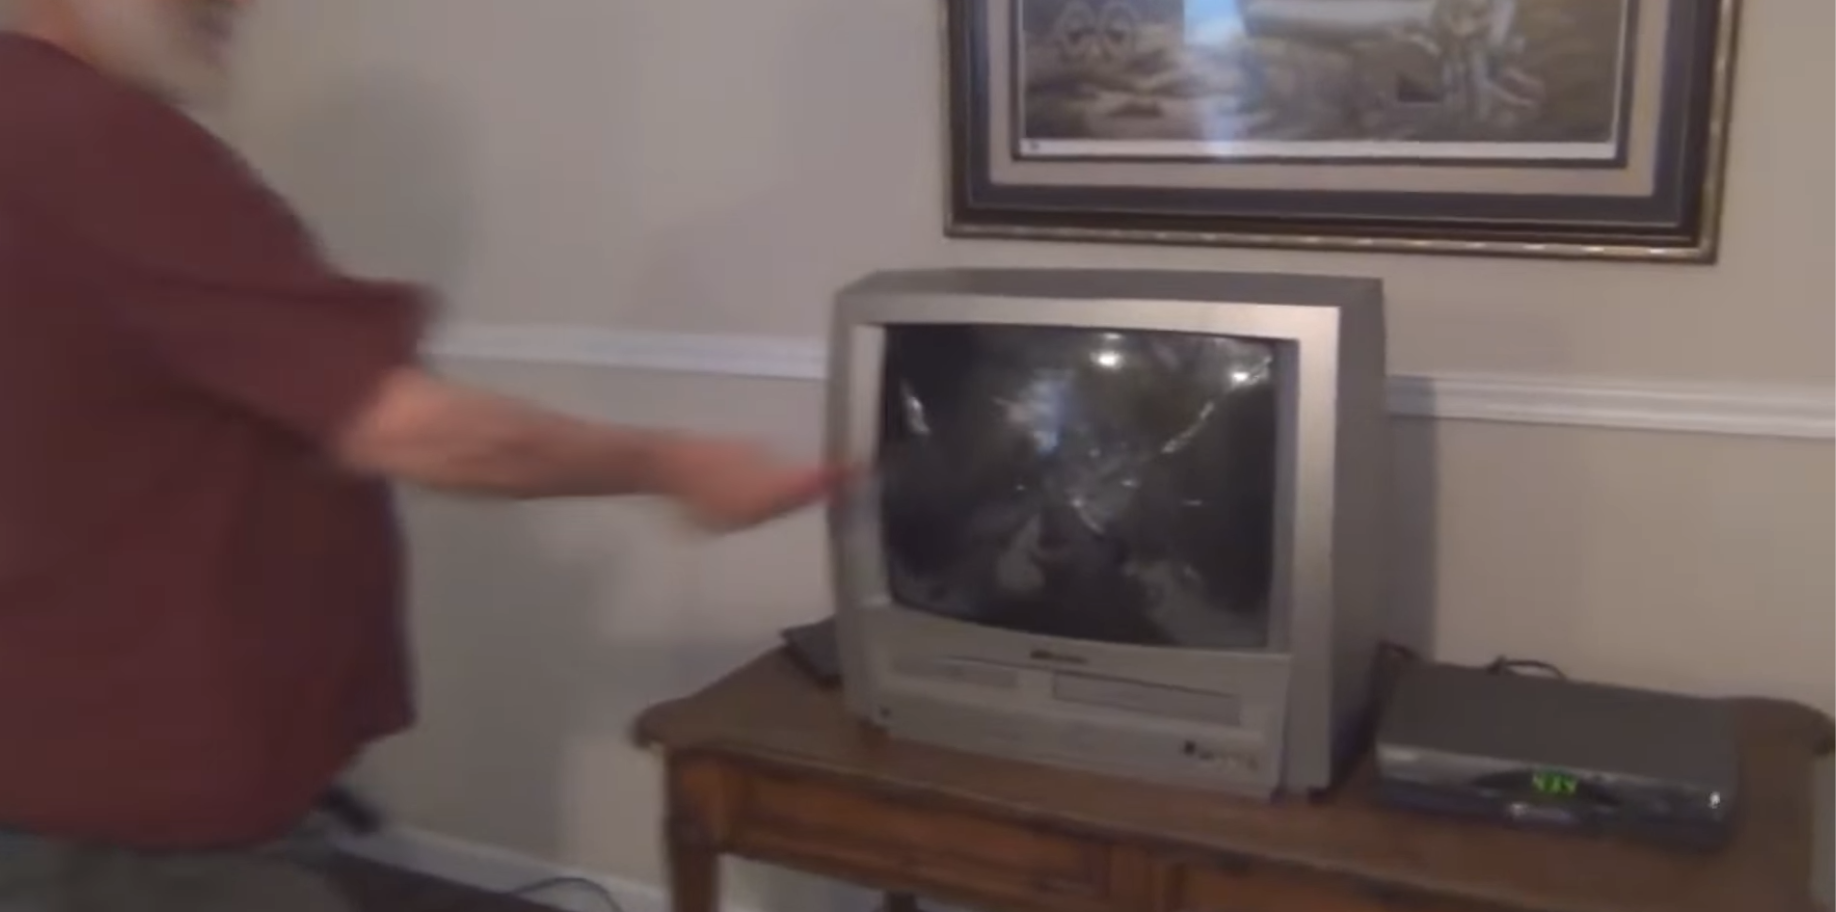 Дед сломал телевизор. Телевизор с плоскогубцами. Злой дед разбил телевизор. Дед разбил телевизор